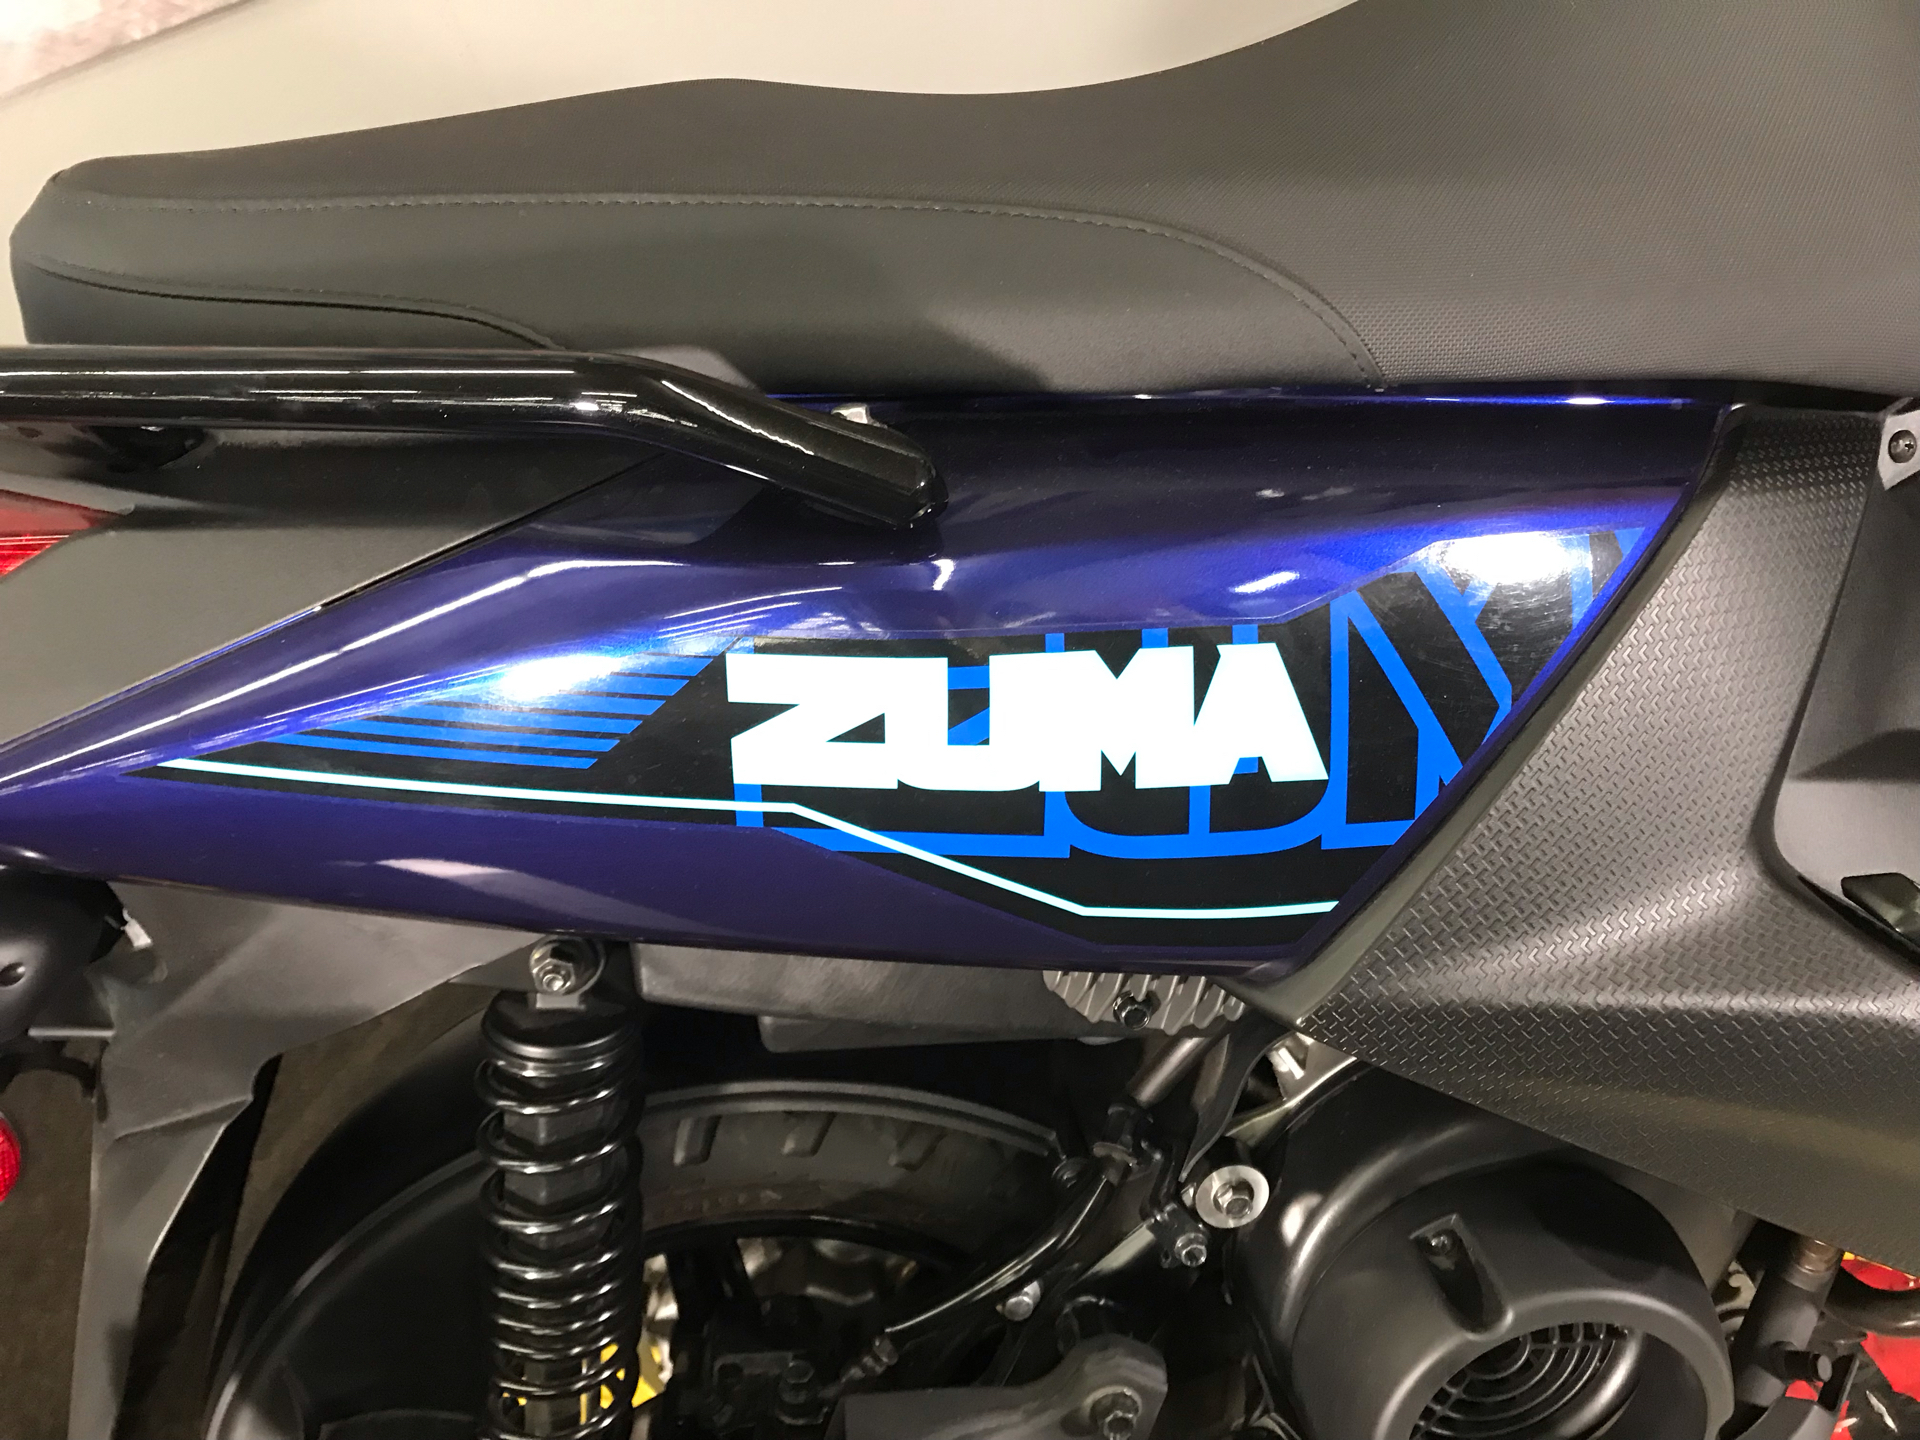 2021 Yamaha Zuma 125 in Tyrone, Pennsylvania - Photo 3